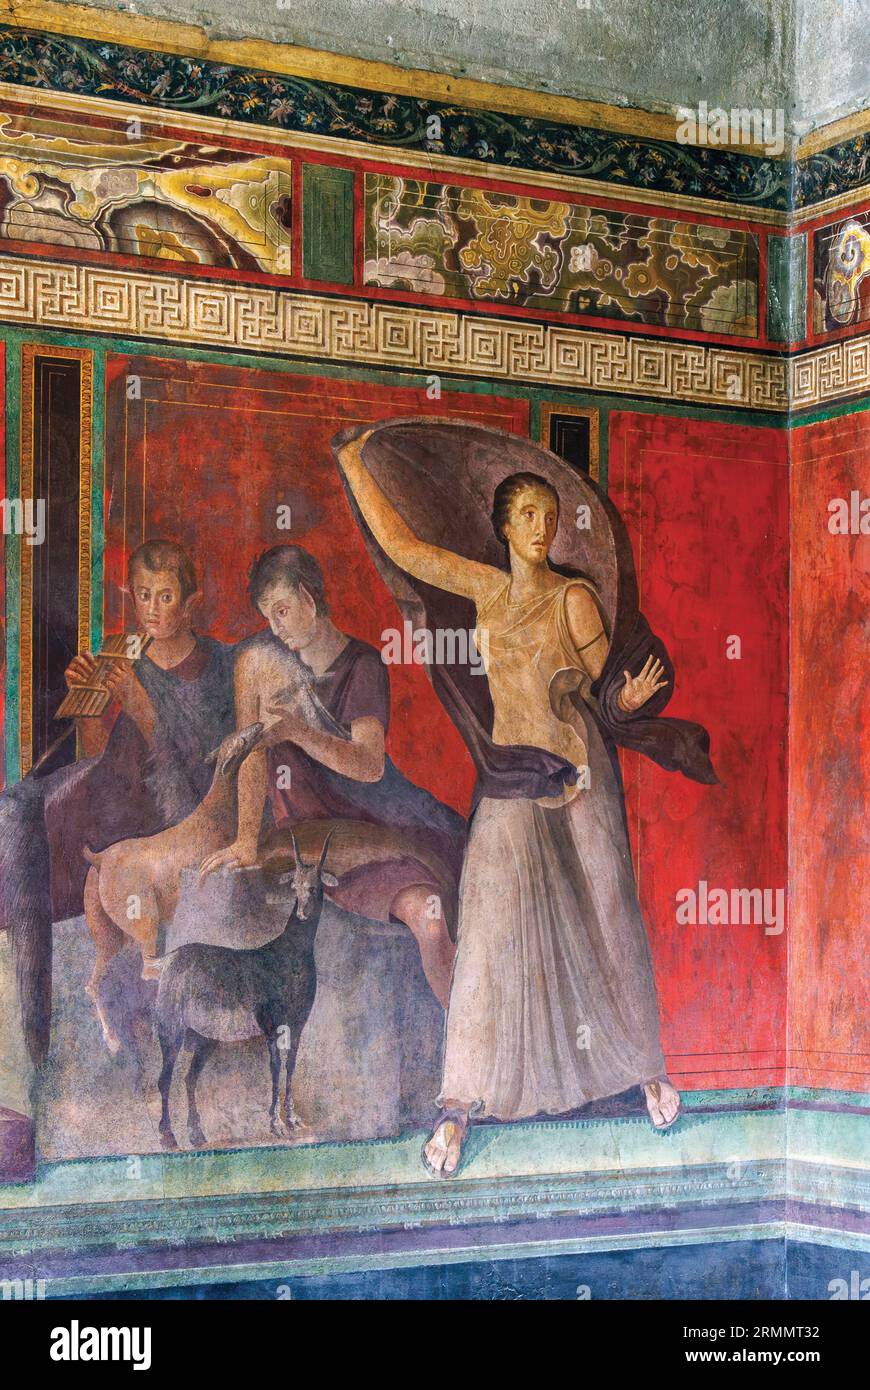 Archäologische Stätte Pompeji, Kampanien, Italien. Paniskoi, mythologische Figuren, die im Wald lebten, saugen ein Kind und spielen Musik, während auf der rechten Seite Stockfoto